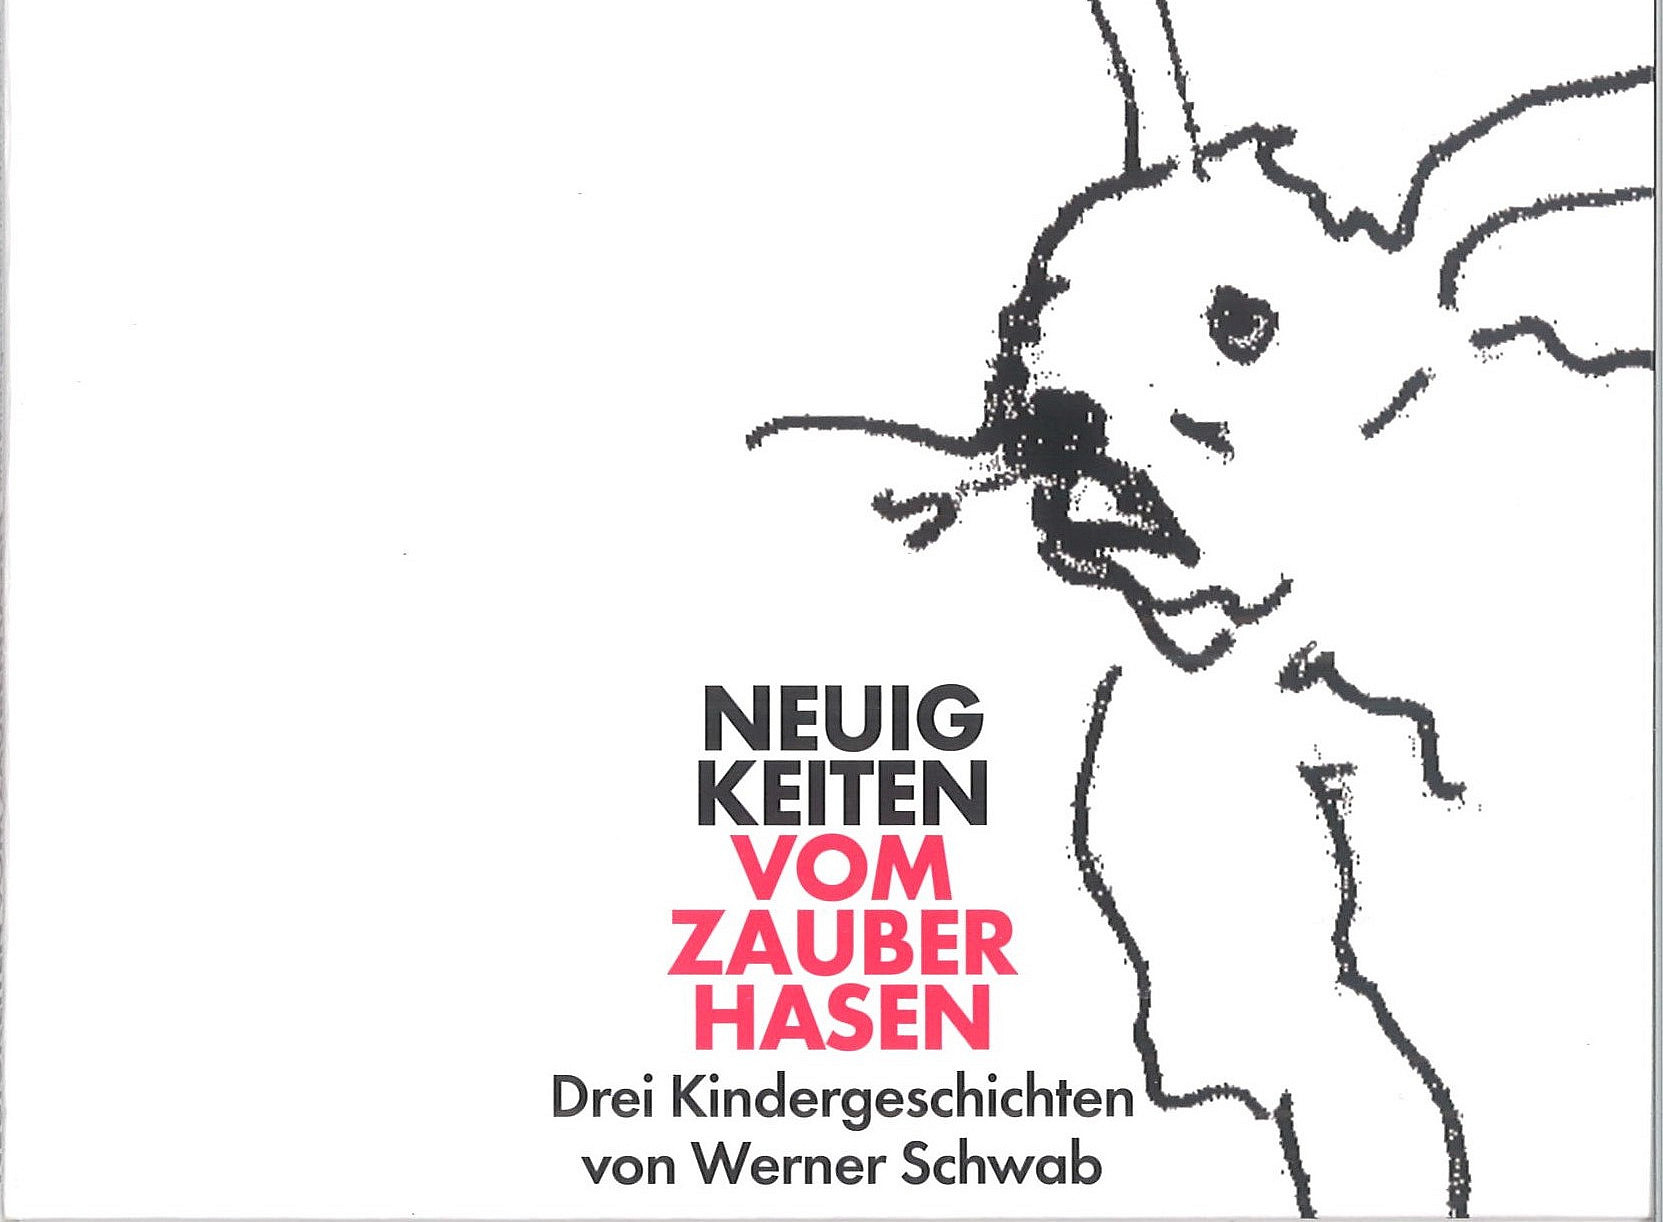 Werner Schwab Zauberhase CD-Cover 